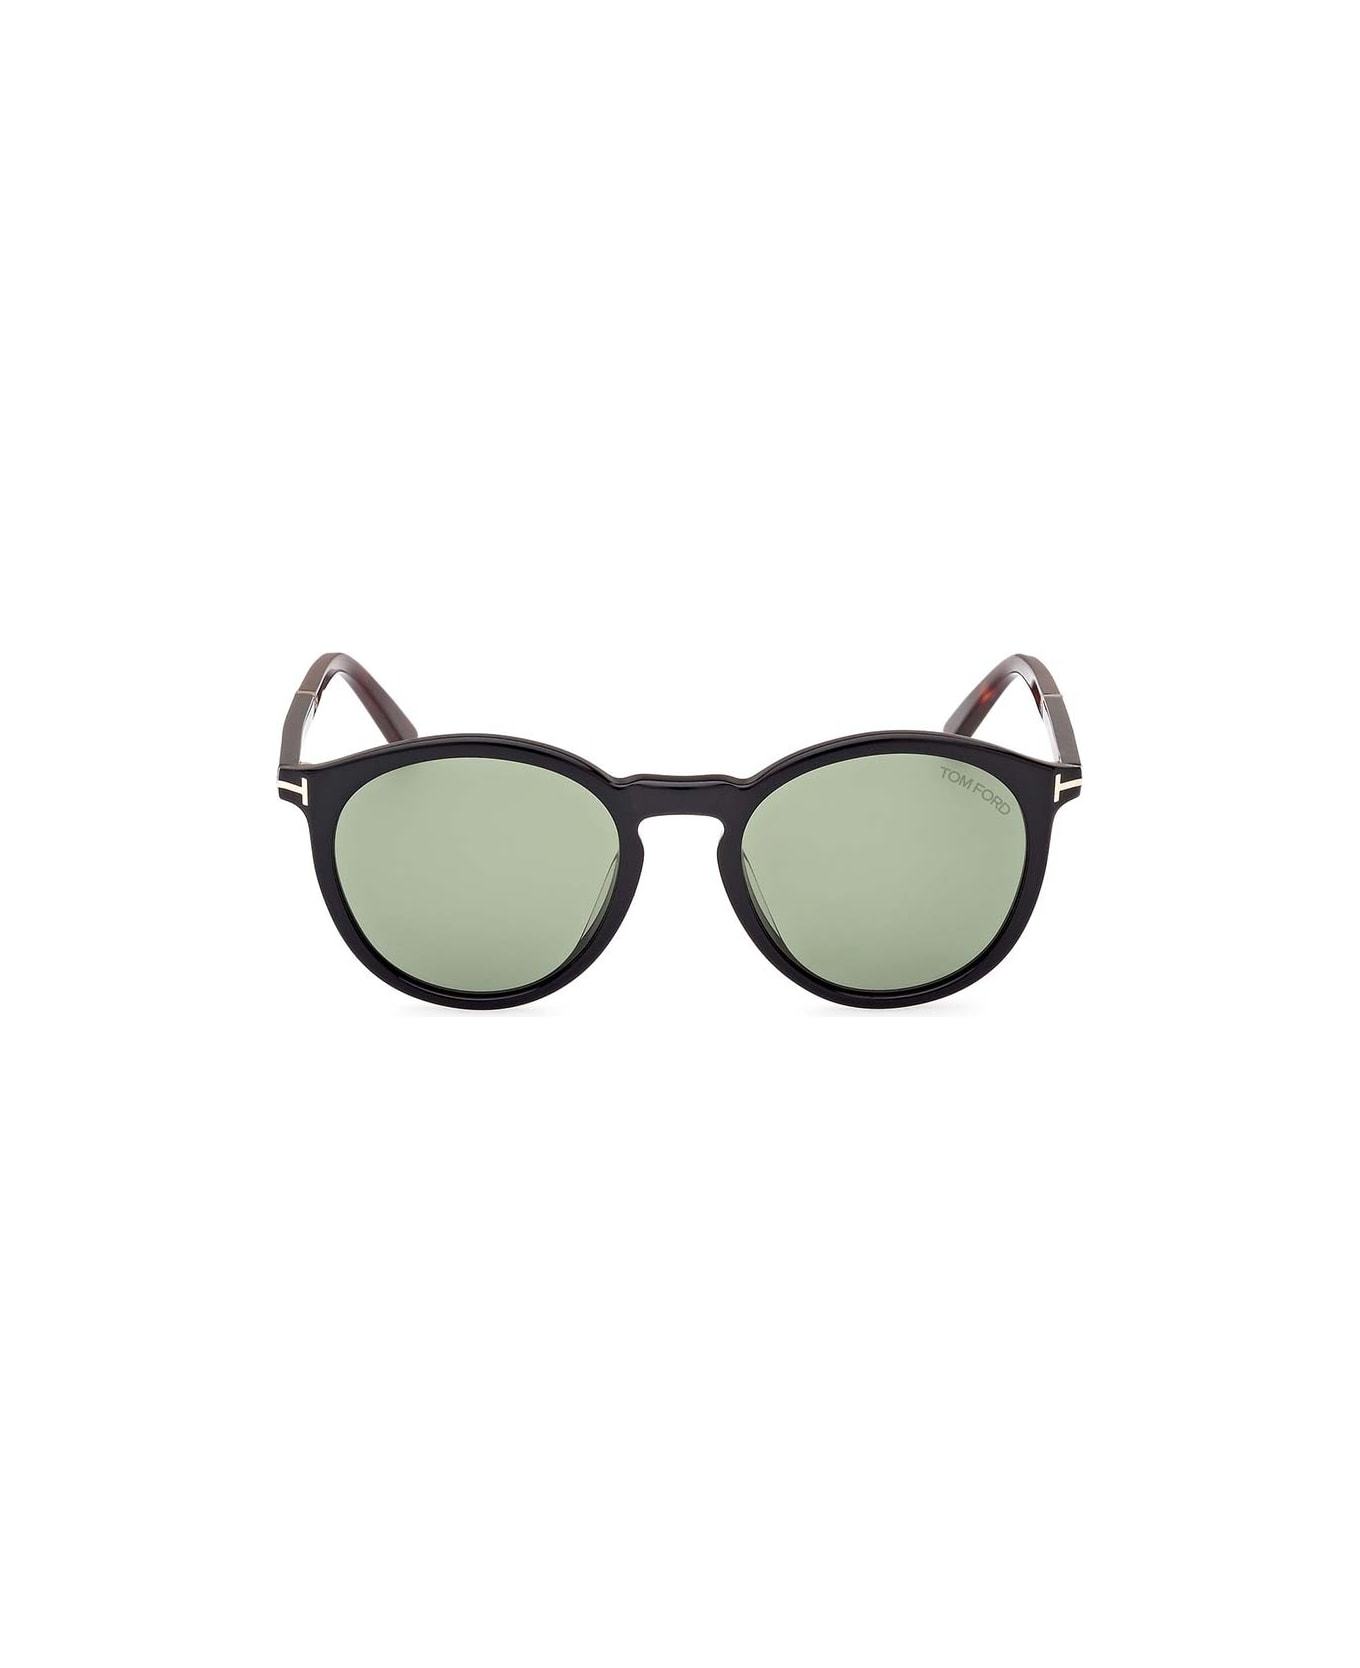 Tom Ford Eyewear Eyewear - Nero/Verde